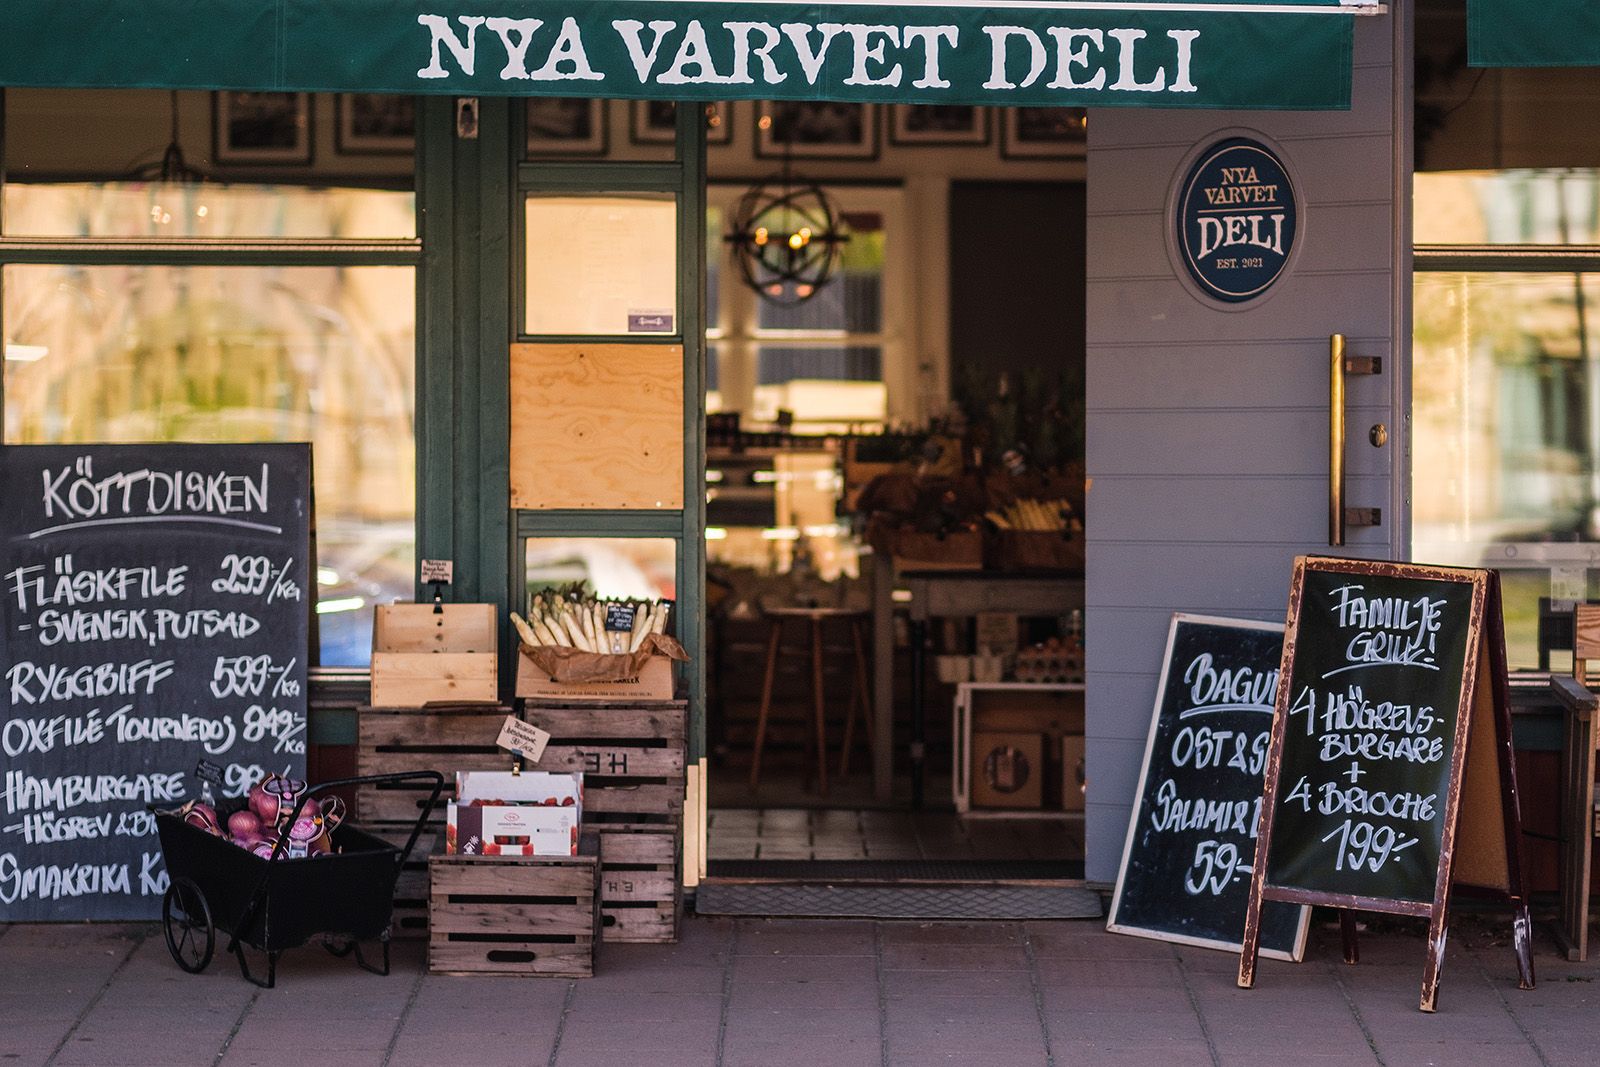 Nya Varvet Deli – Hottest restaurants